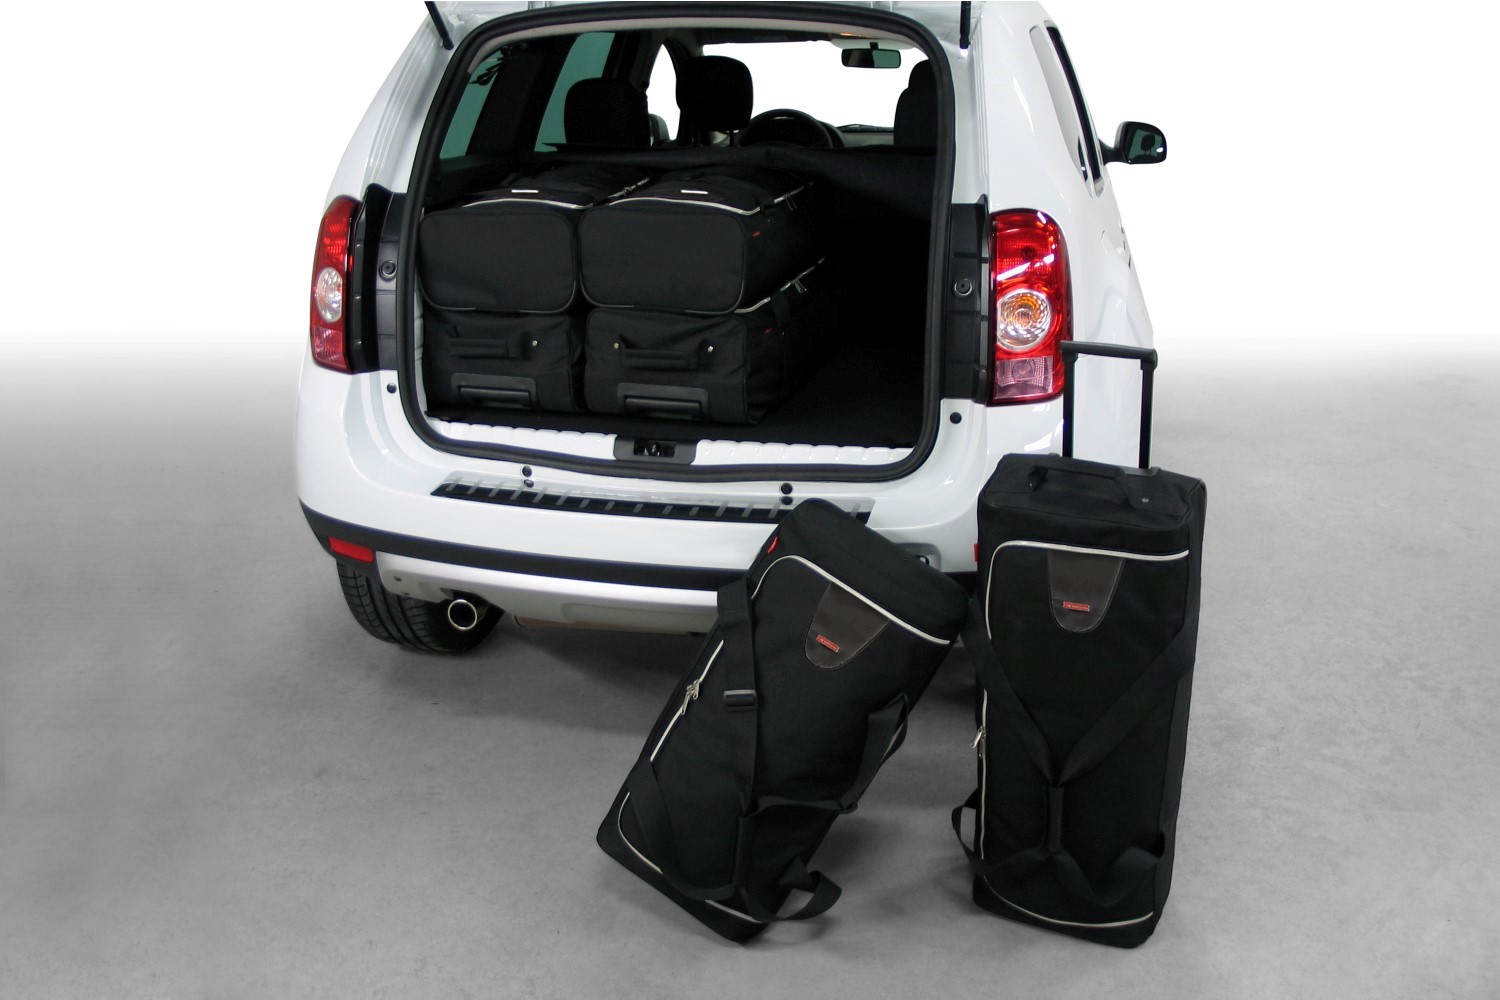 Carbags Reisetaschenset passend für Dacia Duster 4x4 2010-2017 #D20102S